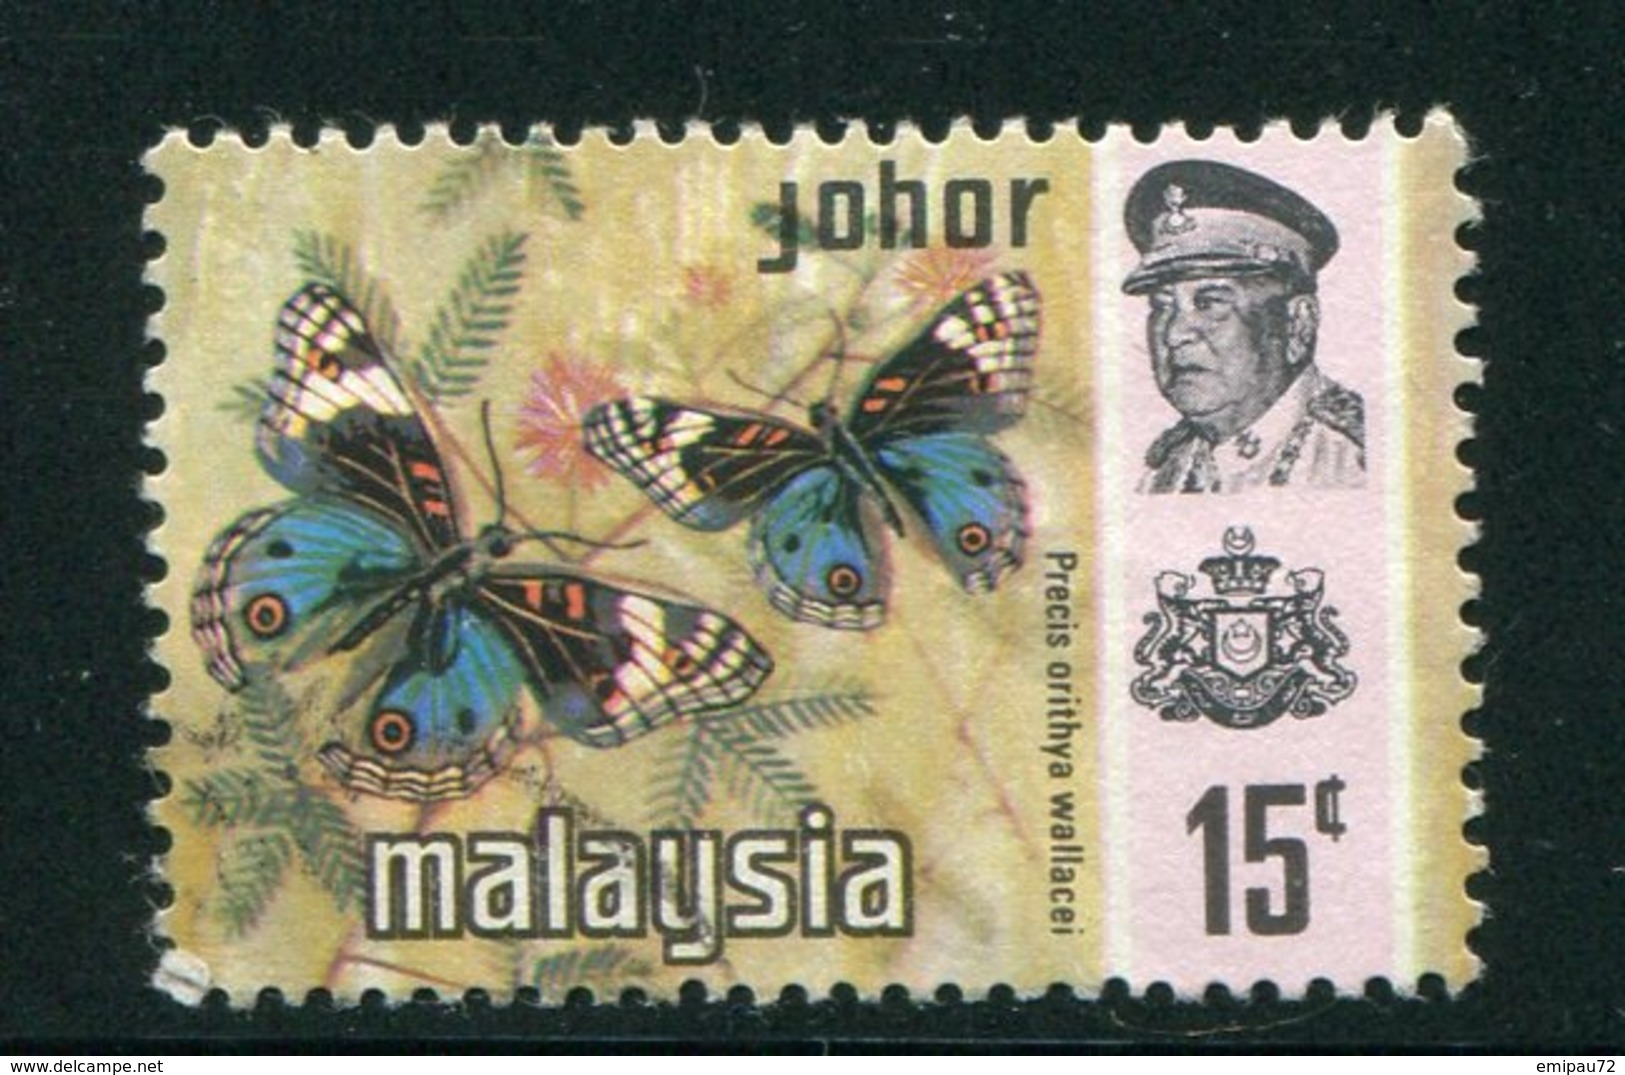 MALAISIE- JOHORE- Y&T N°155- Oblitéré (papillon) - Johore